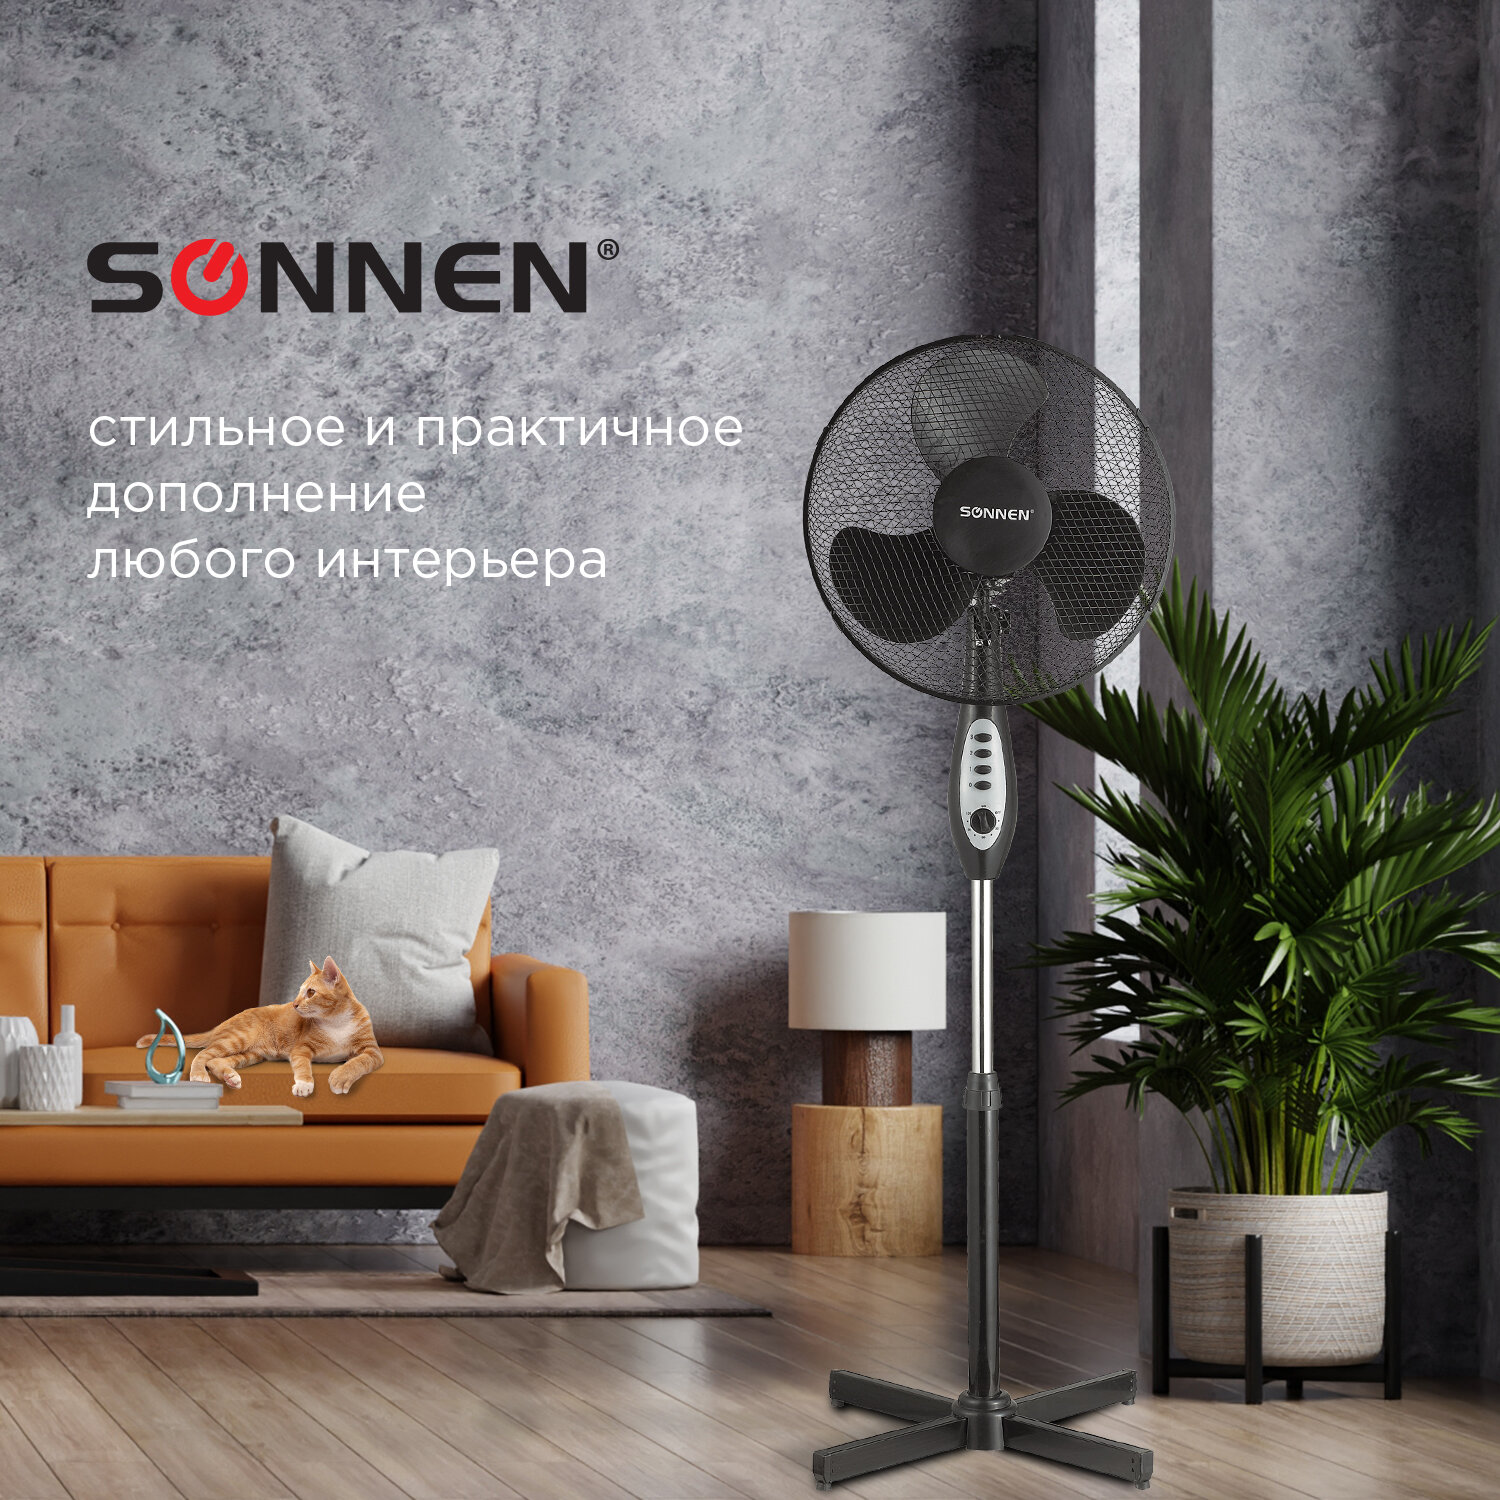 Sonnen Вентилятор SONNEN FS40-A55